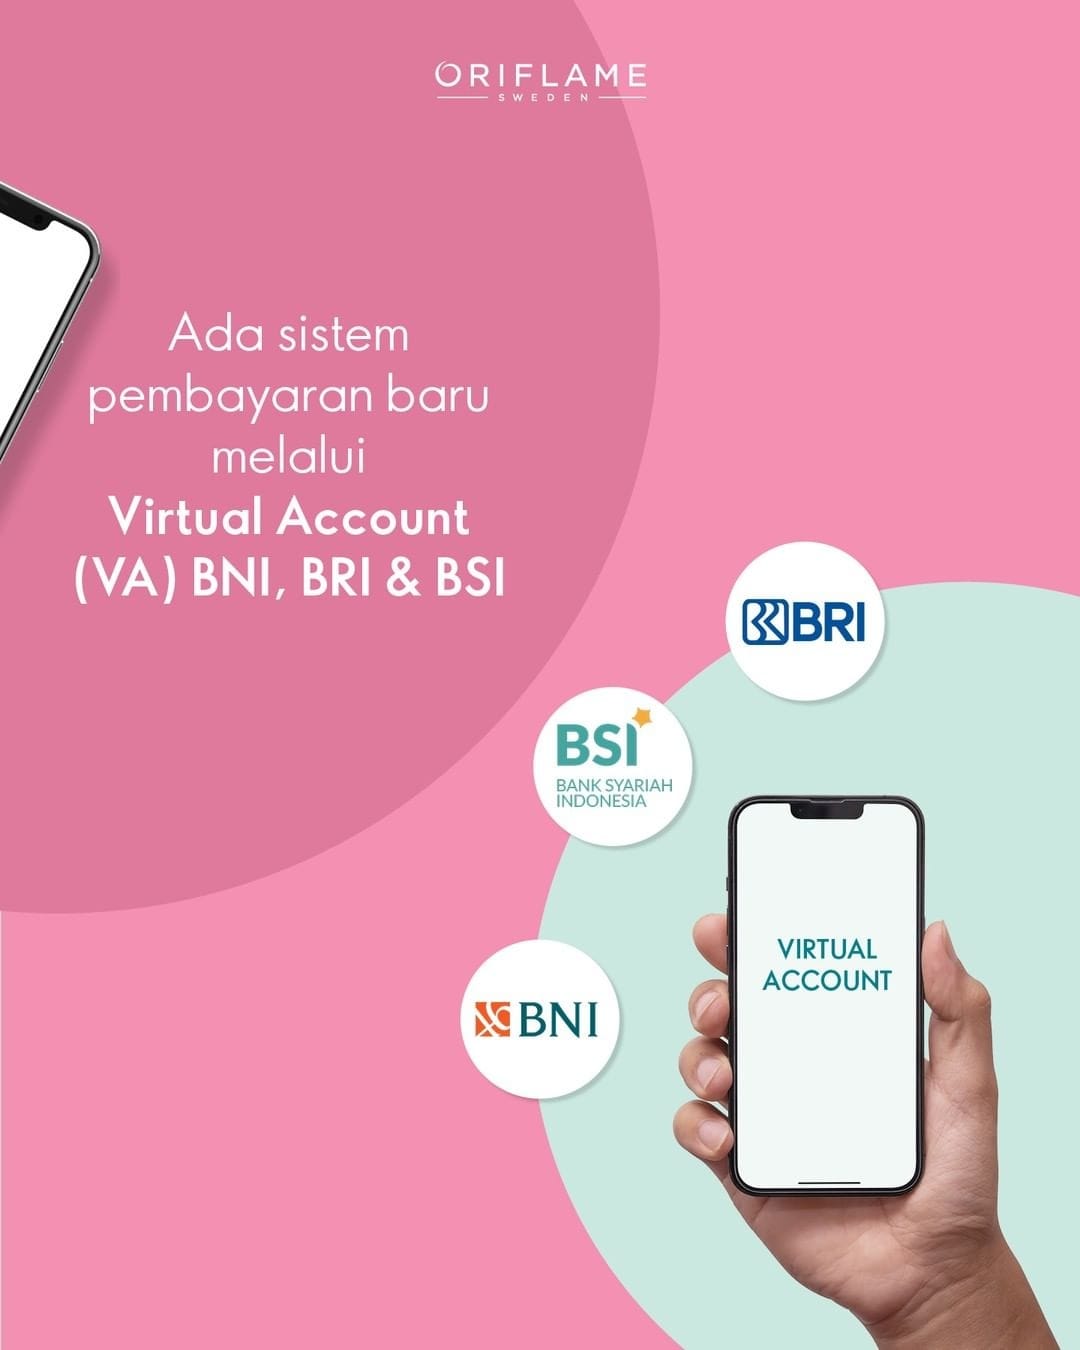 Cara Bayar Oriflame Virtual Account (VA) BNI, BRI & BSI